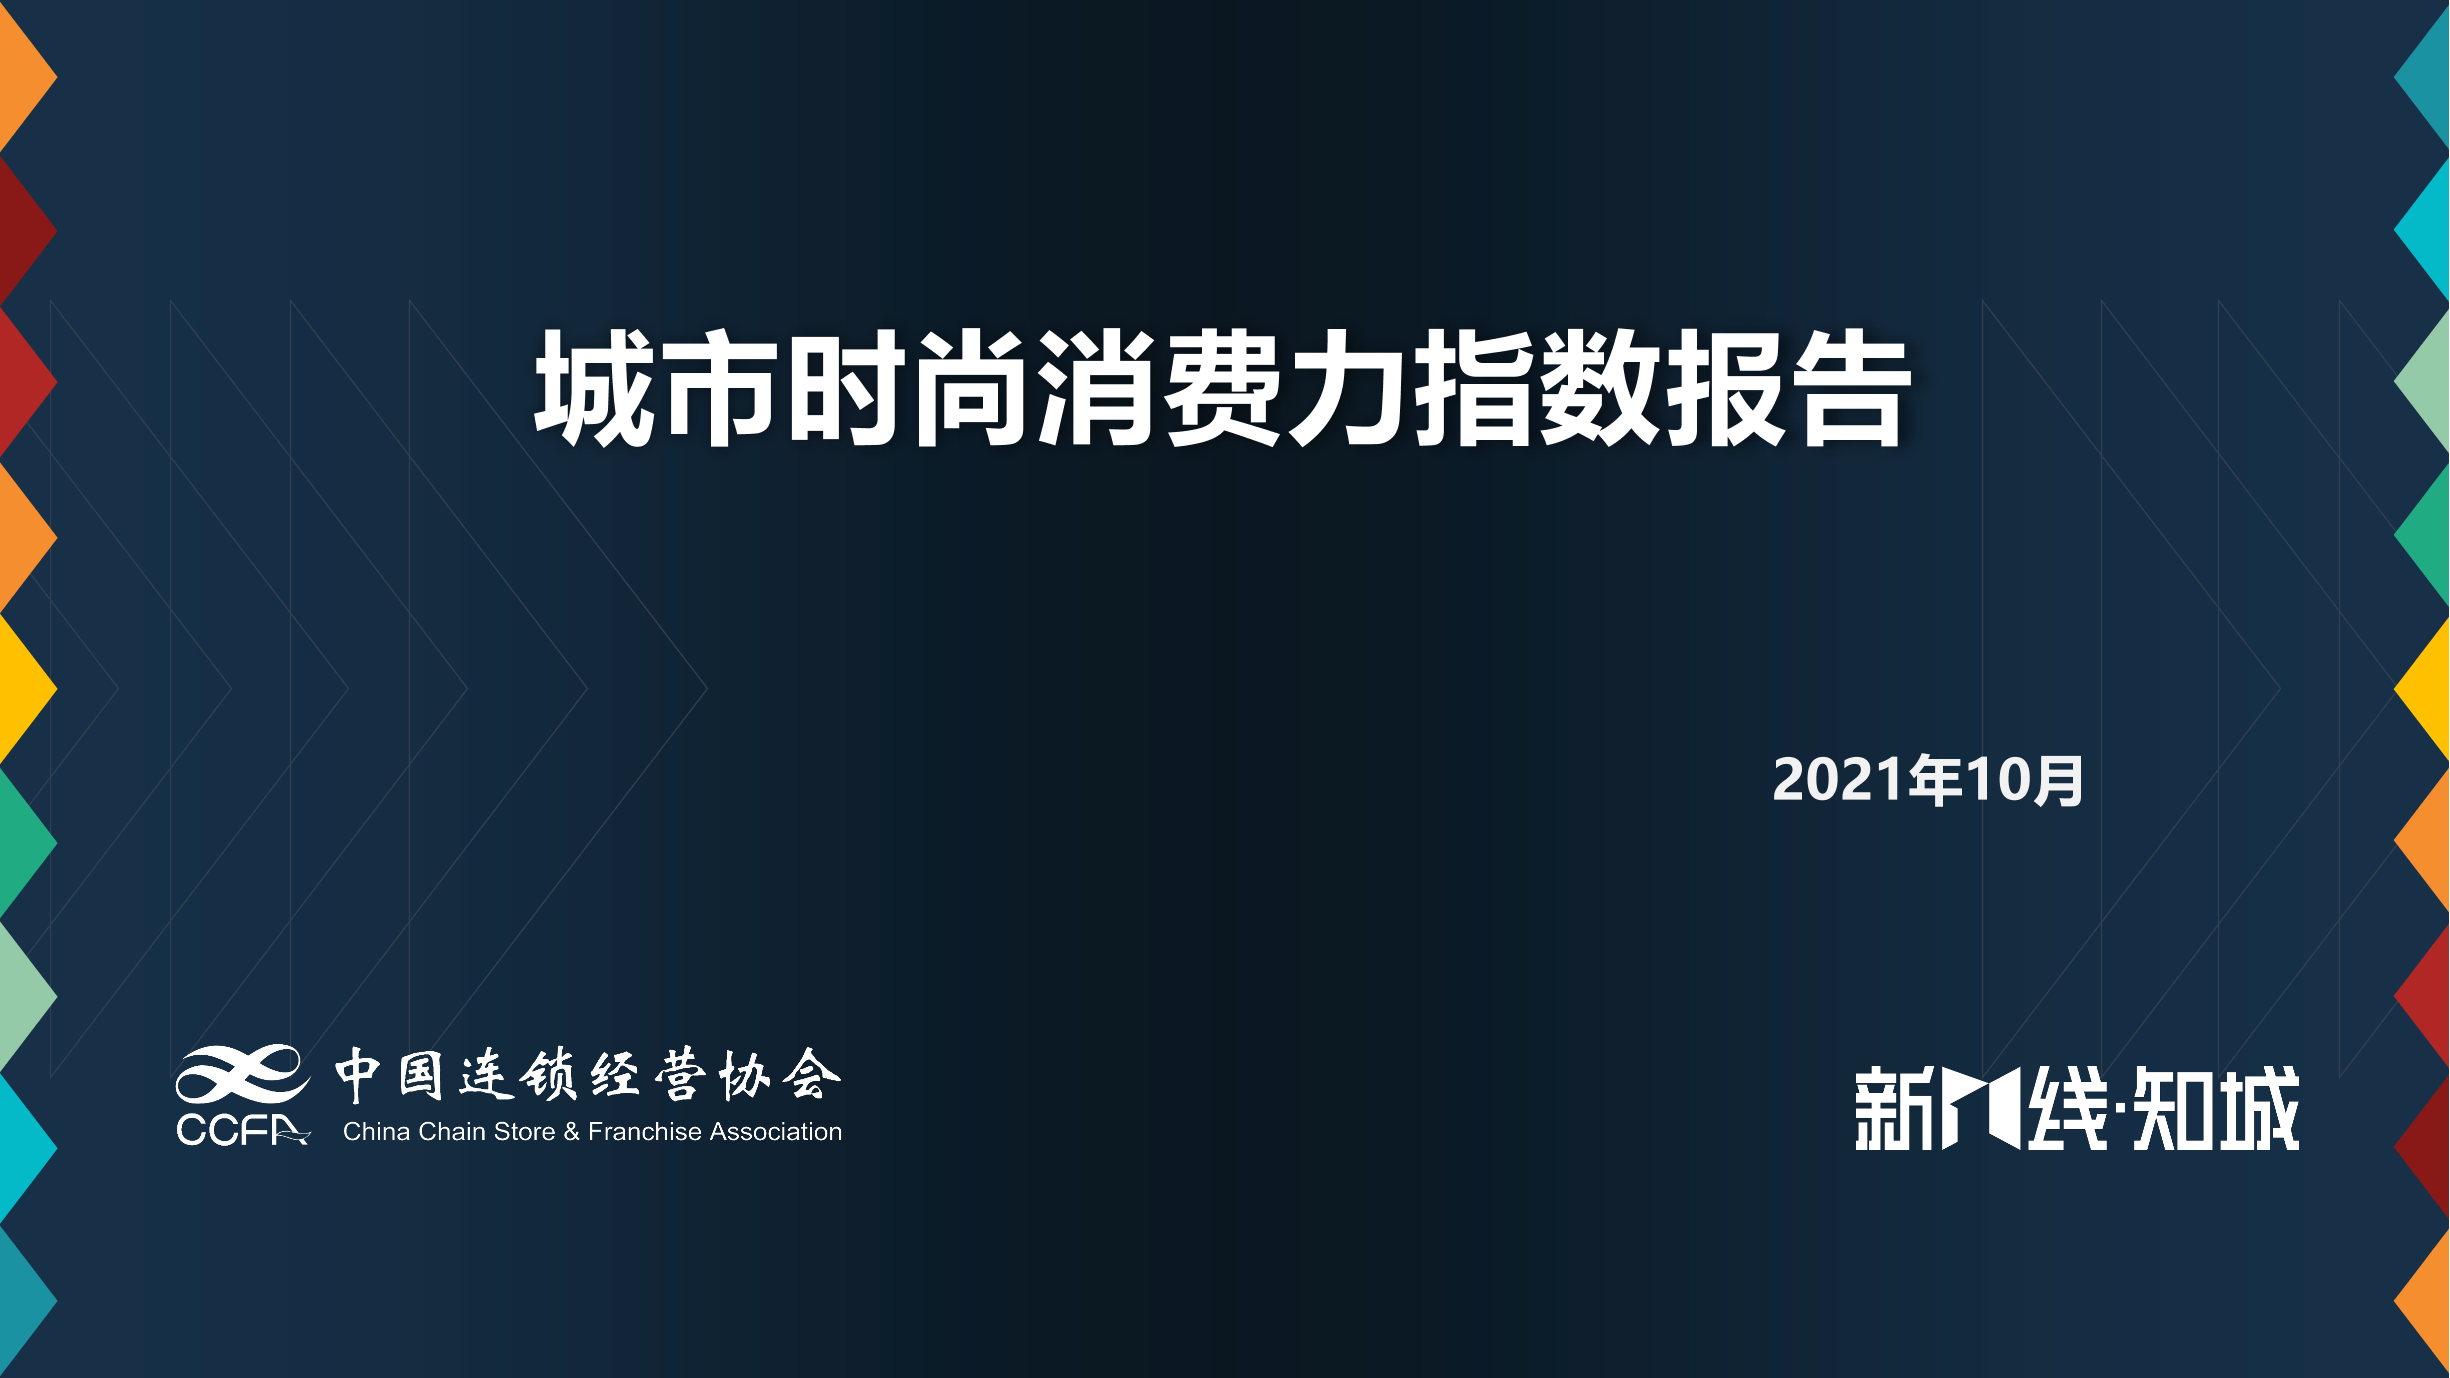 2021年城市时尚消费力指数报告-中国连锁经营协会-2021.10-14页2021年城市时尚消费力指数报告-中国连锁经营协会-2021.10-14页_1.png